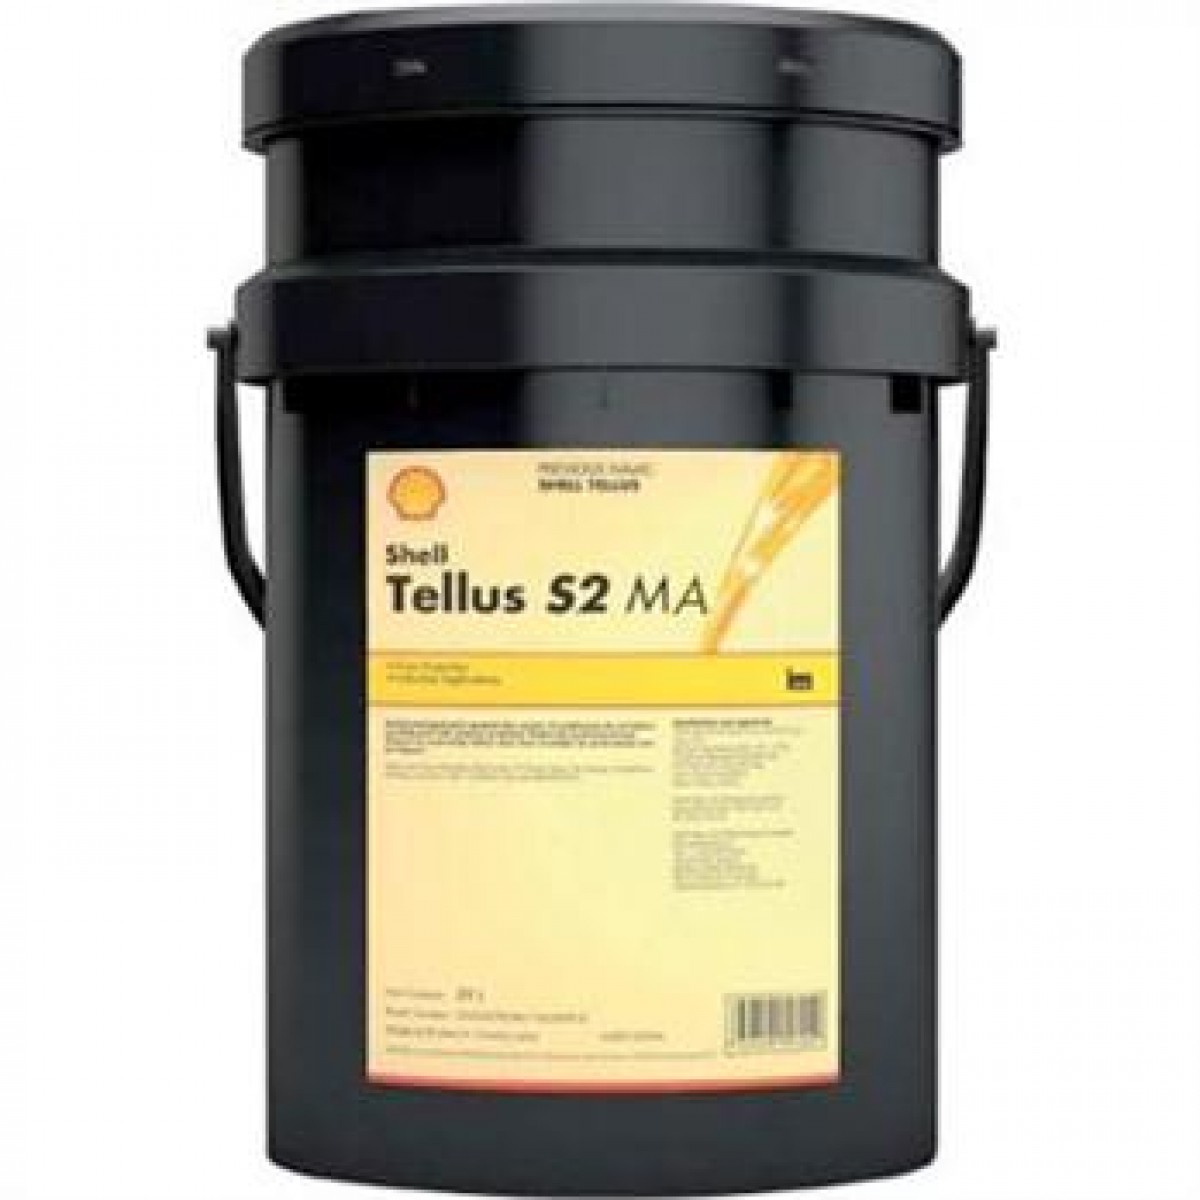 Shell Tellus S2 MA 46 20L